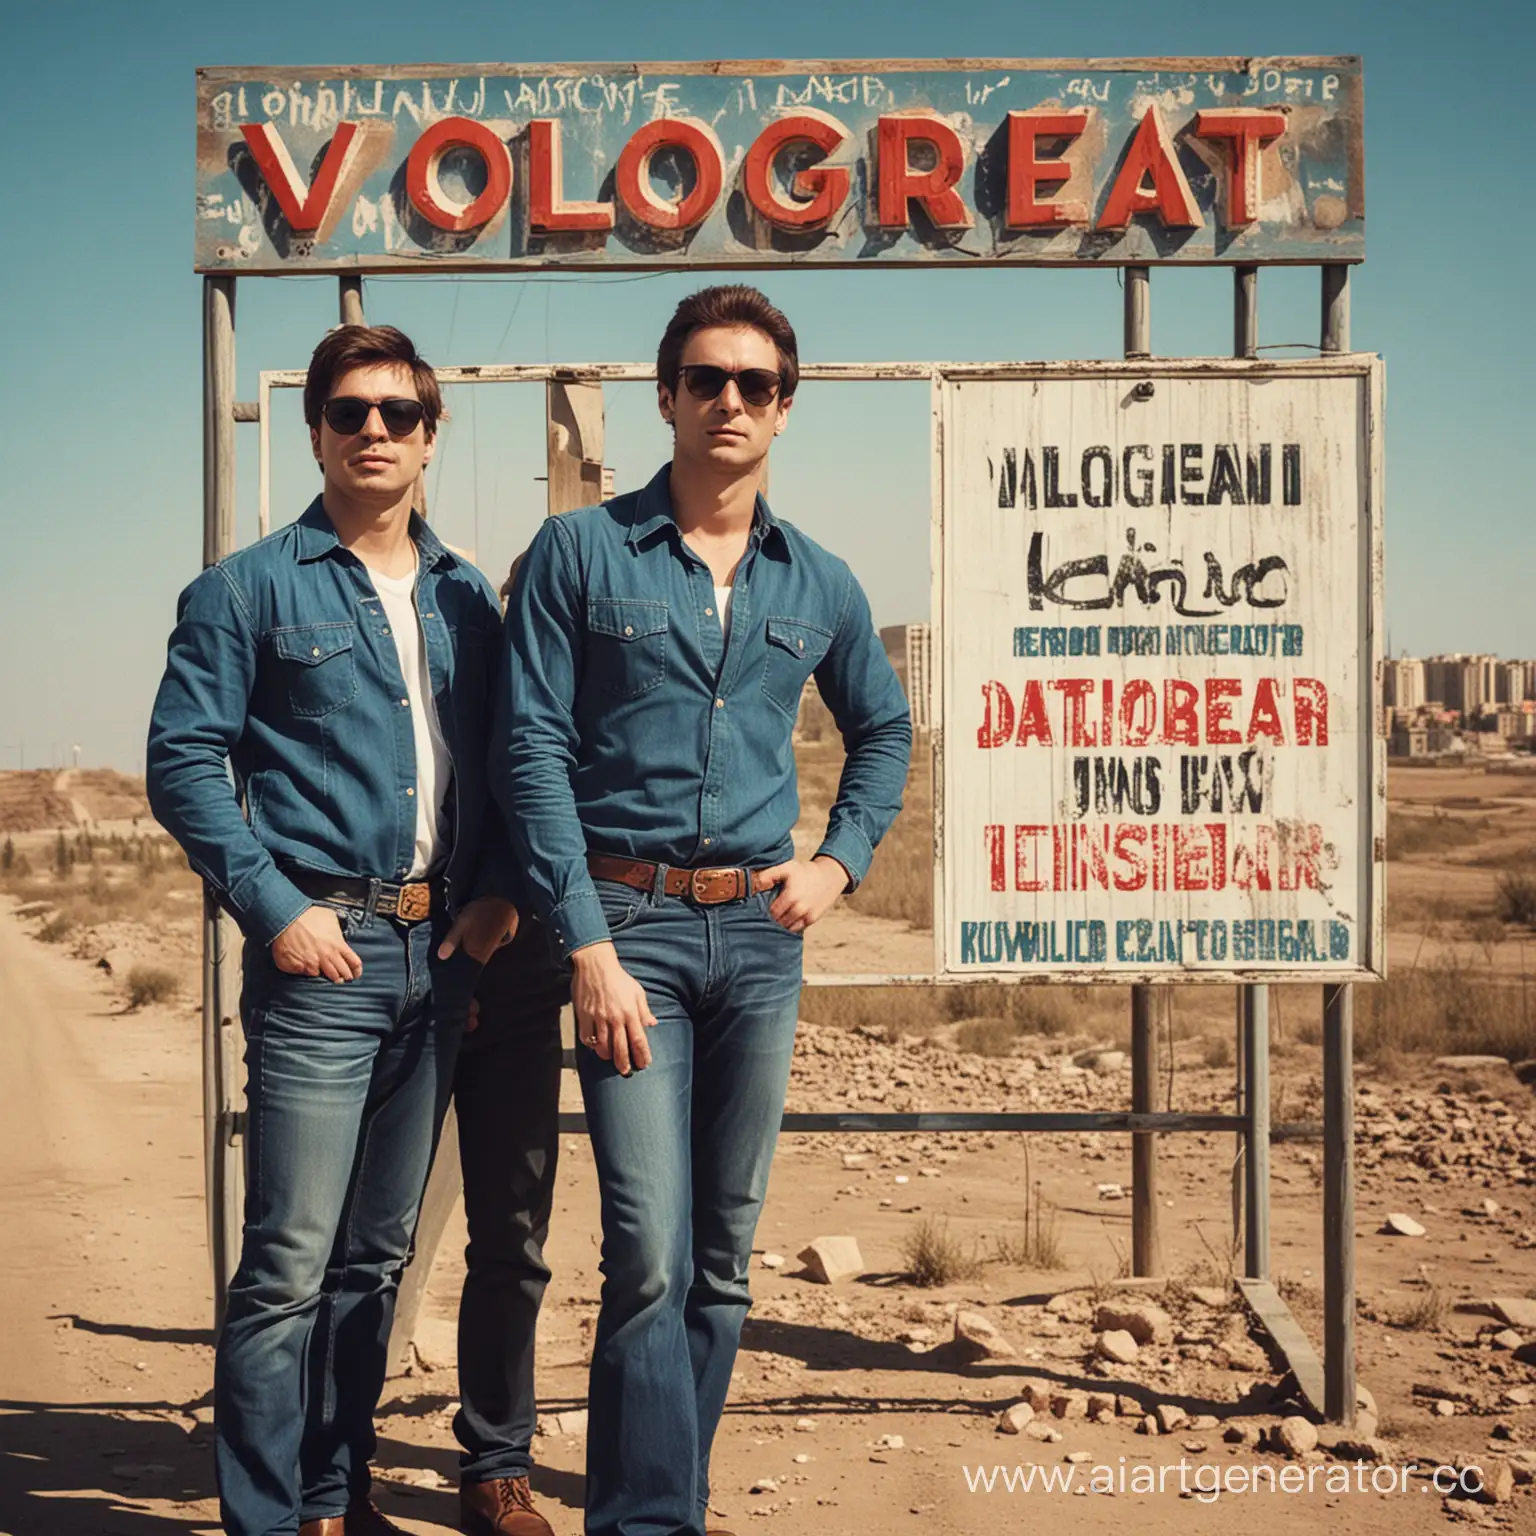 Обложка для музыки, два мужика в солнечных очках перед знаком "Волгоград - Саратов"